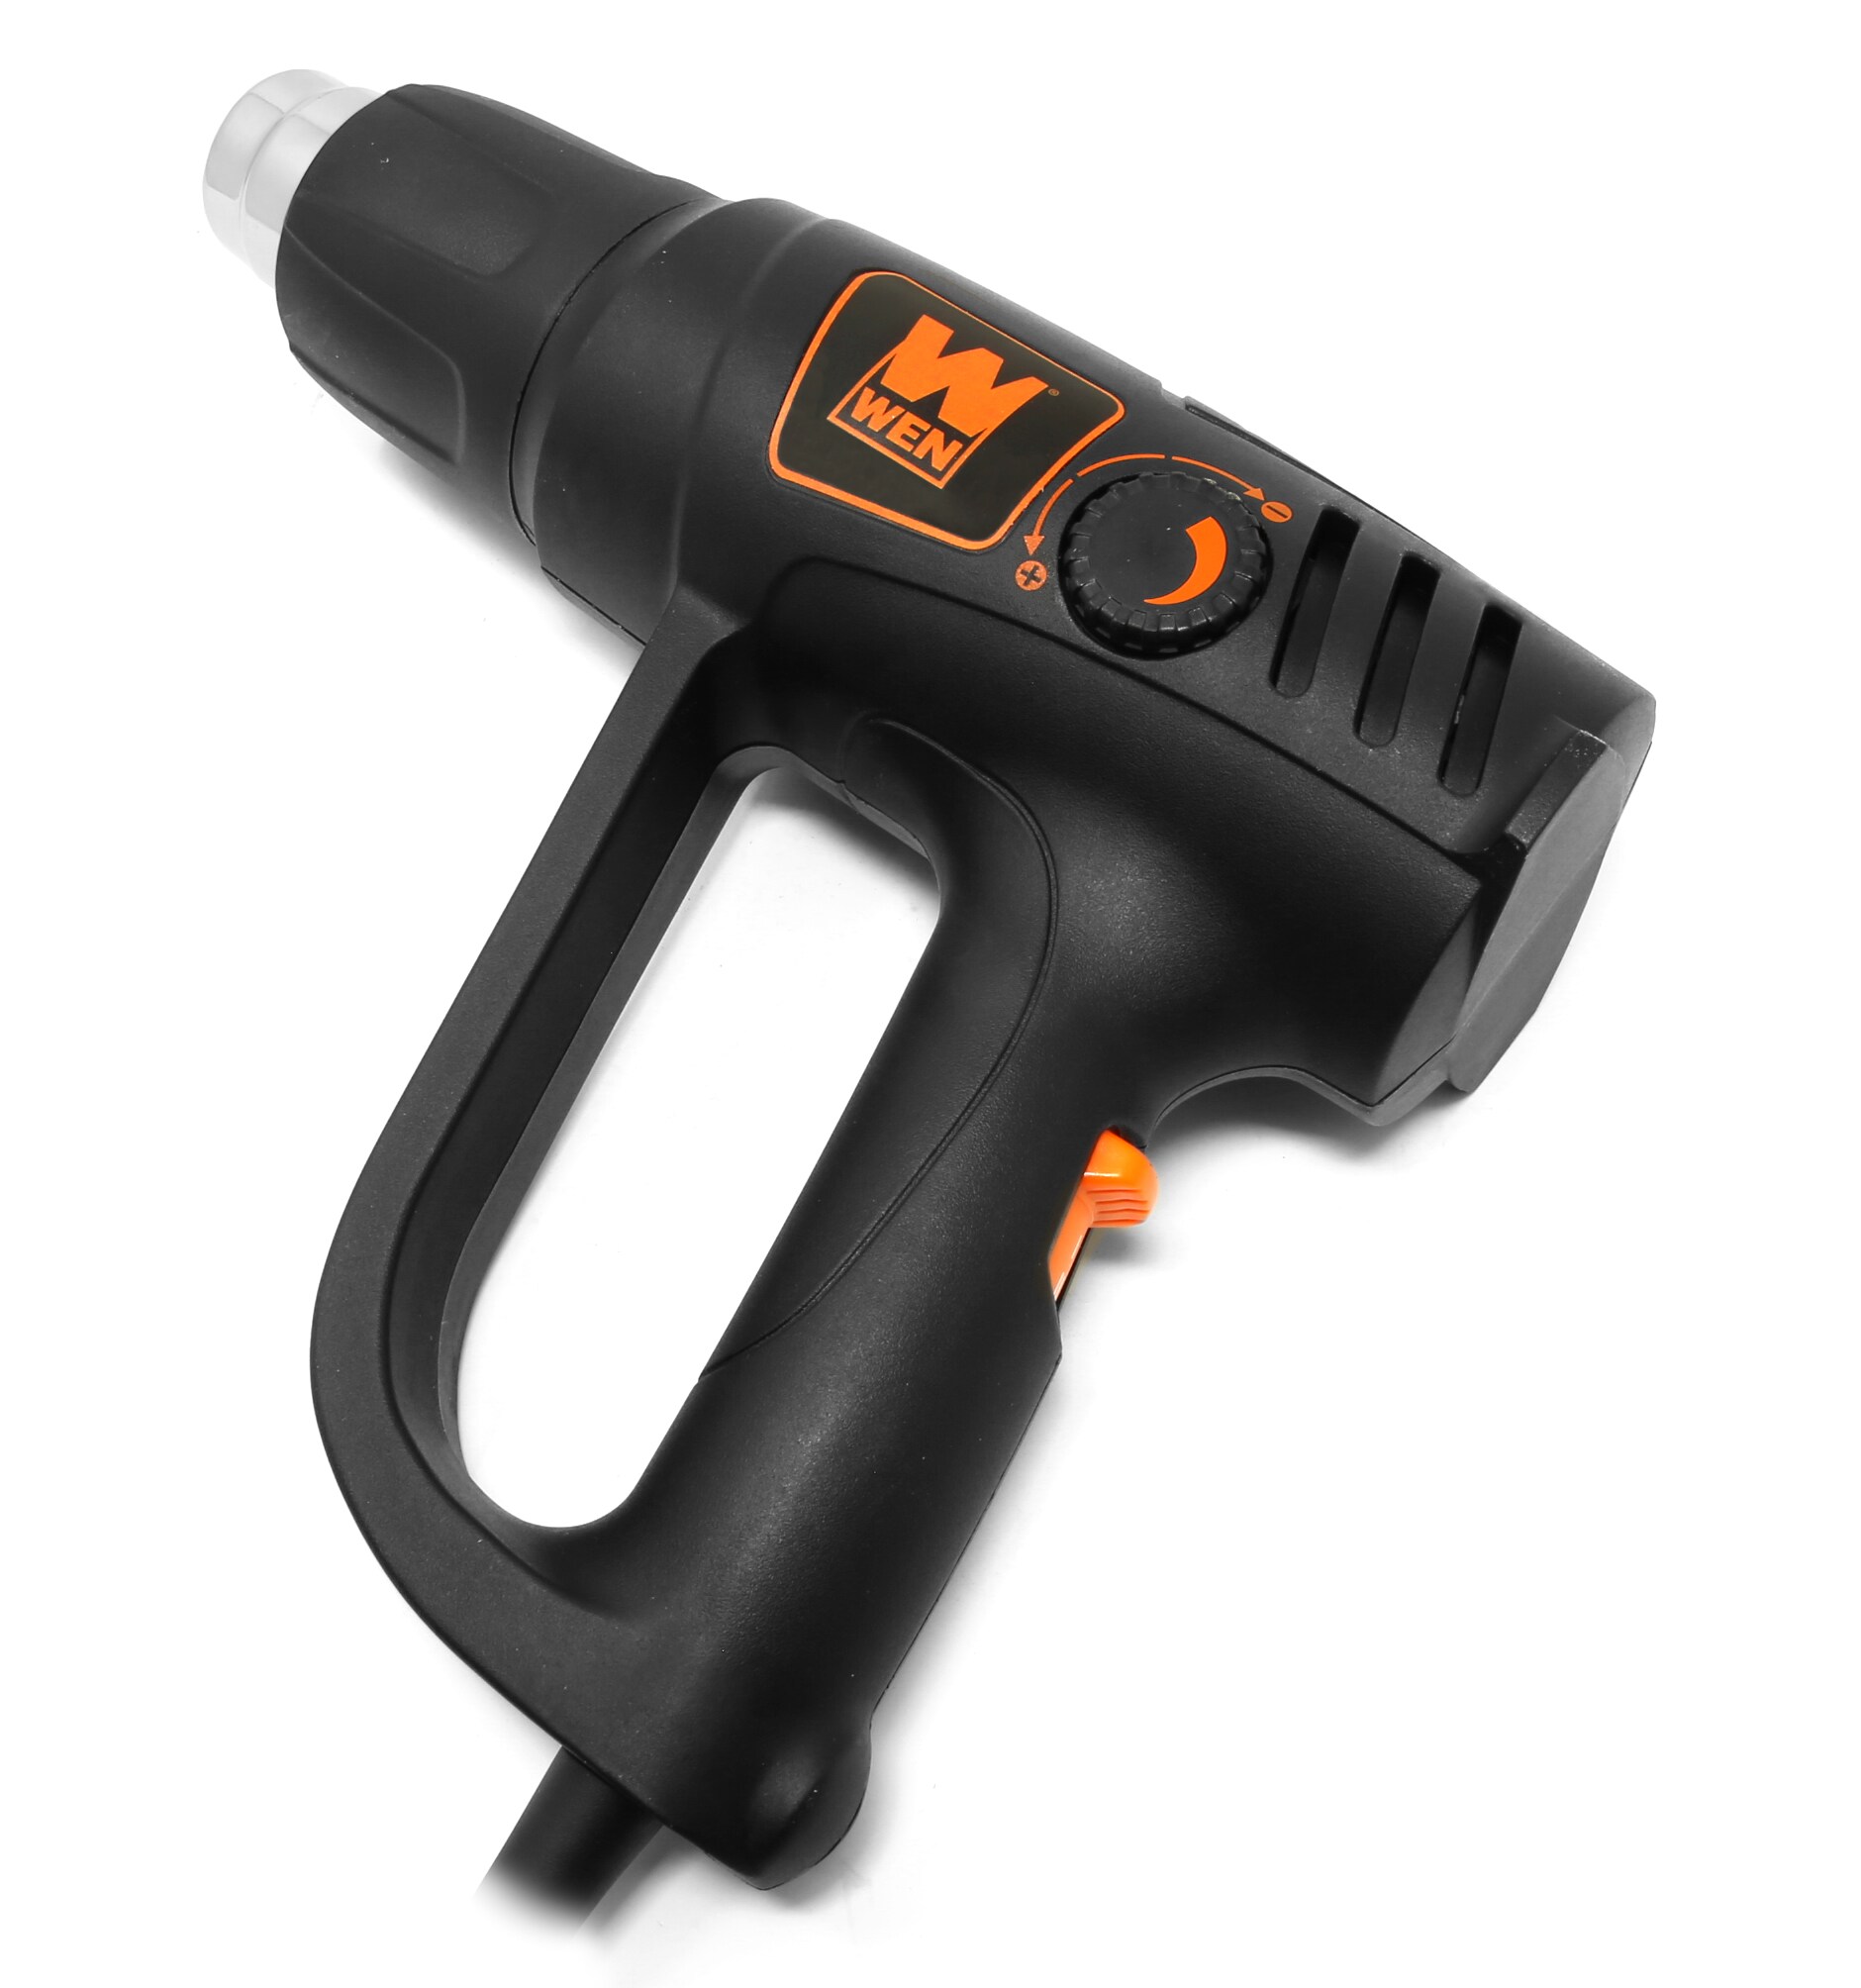 Heat Gun – Vantex Electric Products